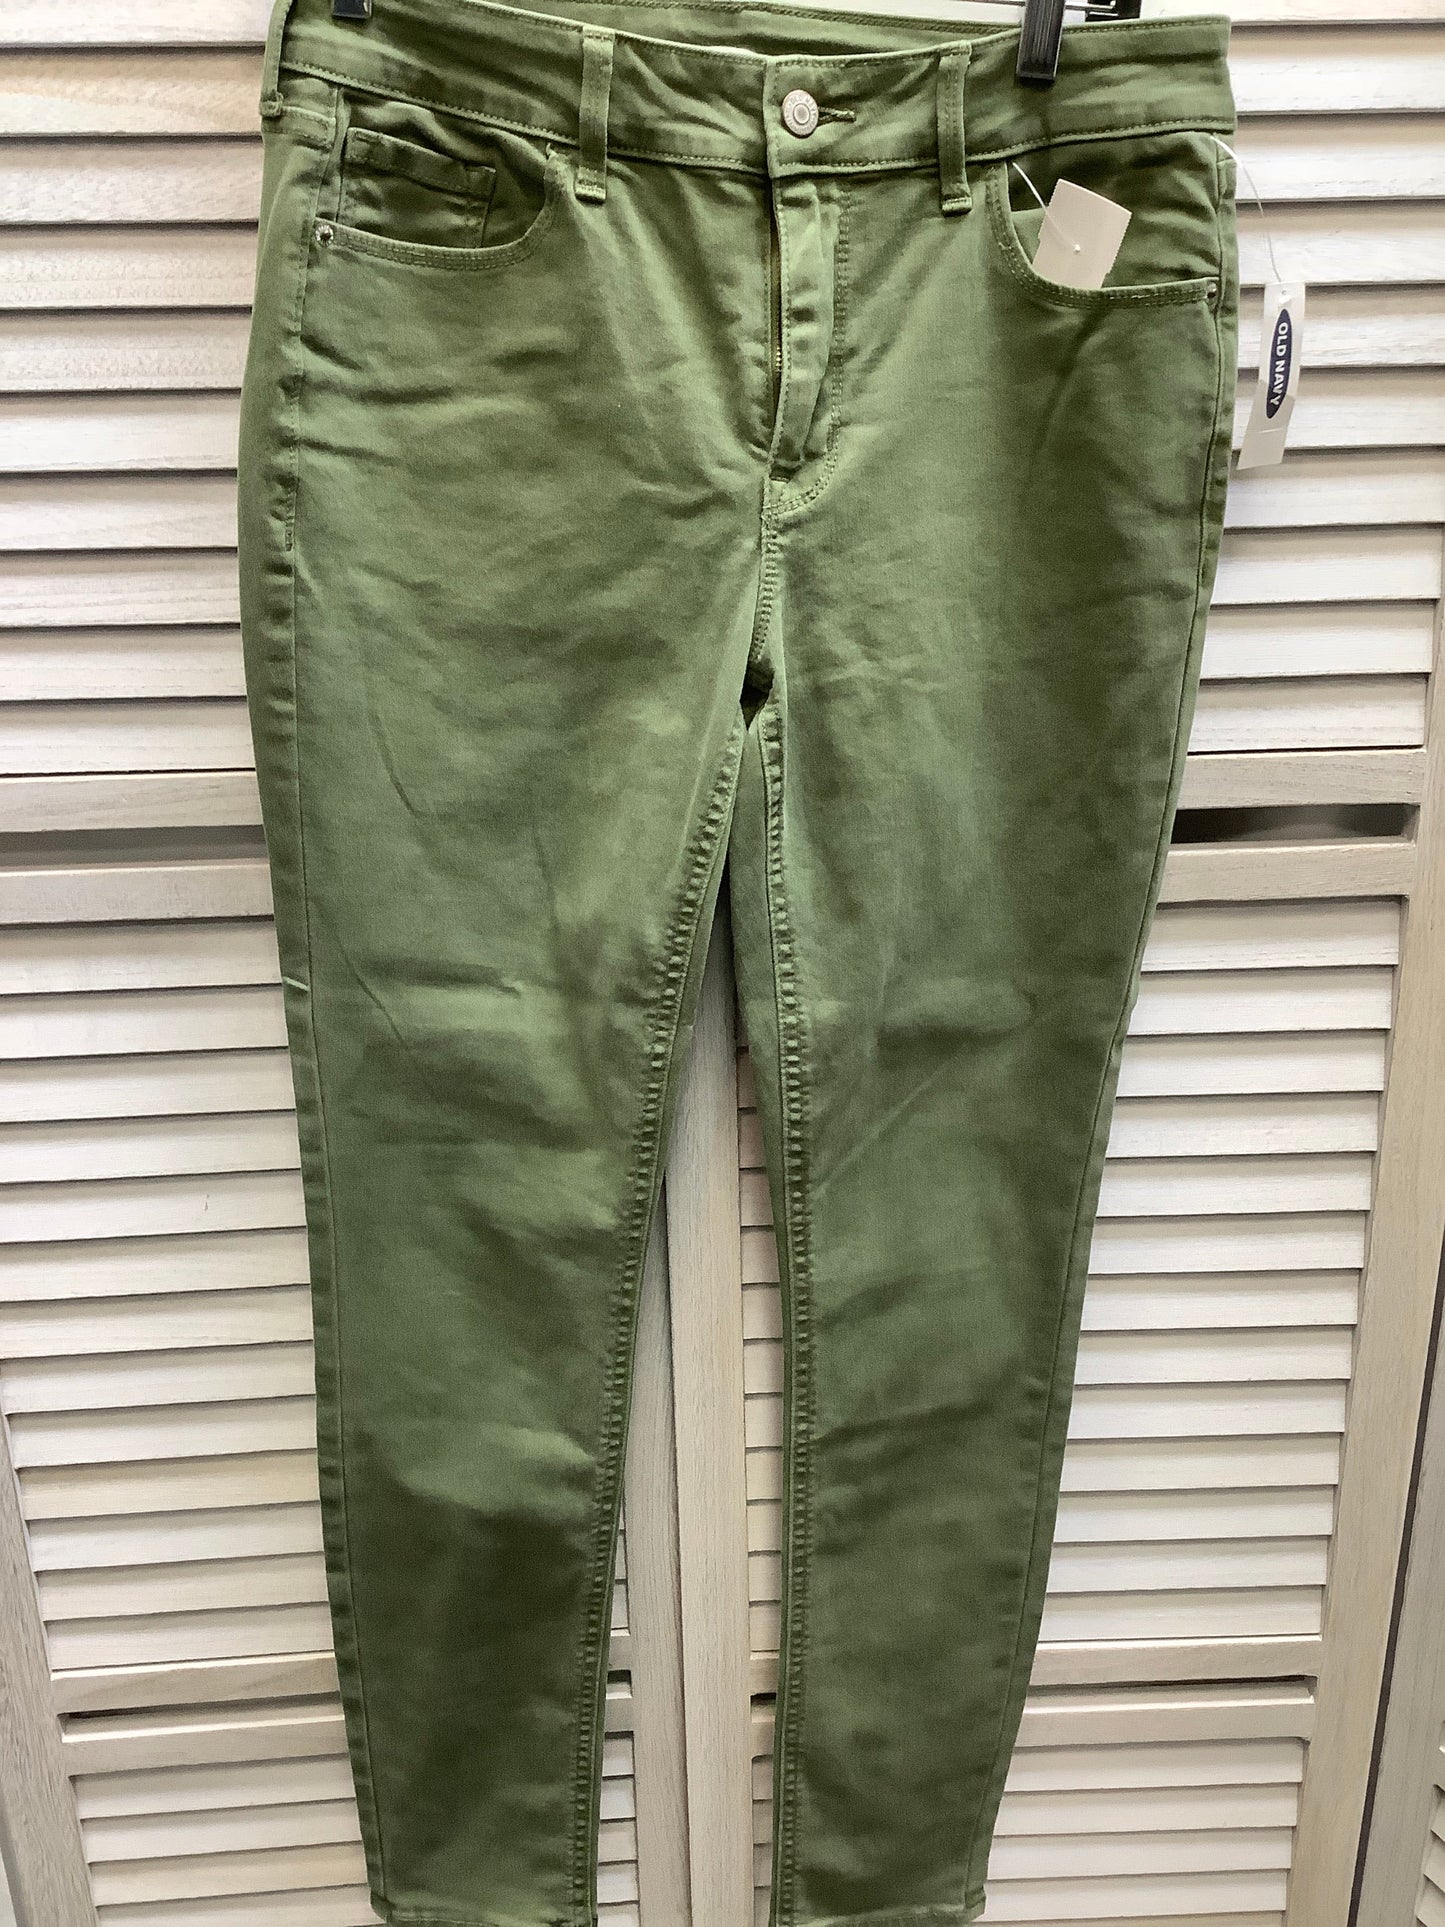 Green Denim Jeans Skinny Old Navy, Size 8